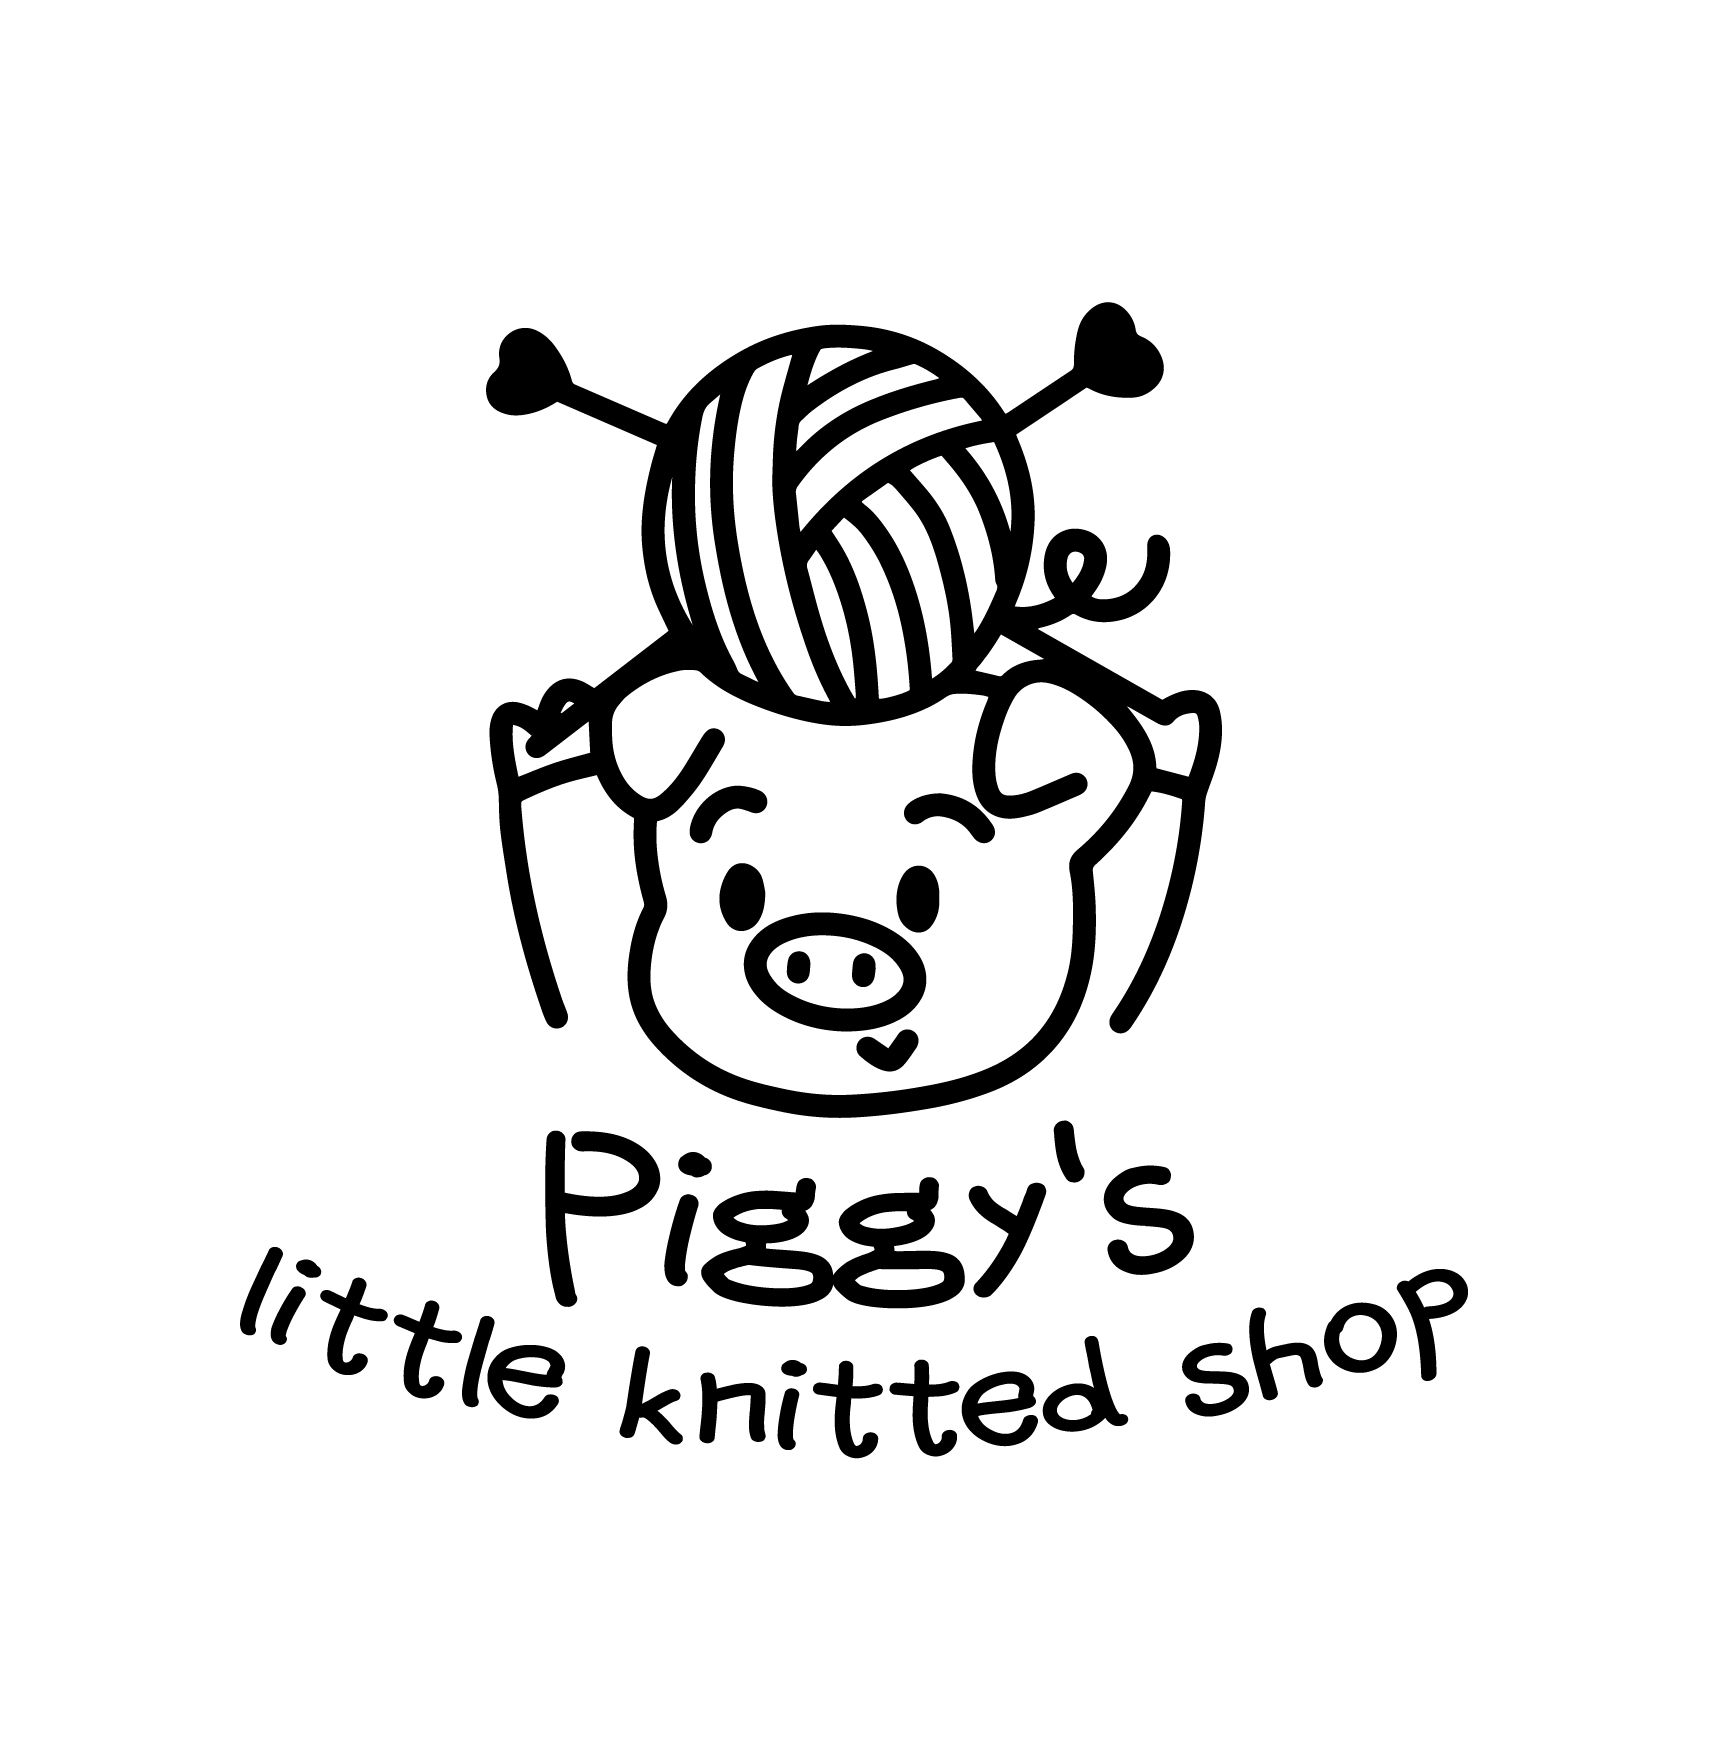 Piggy’s little knitted shop